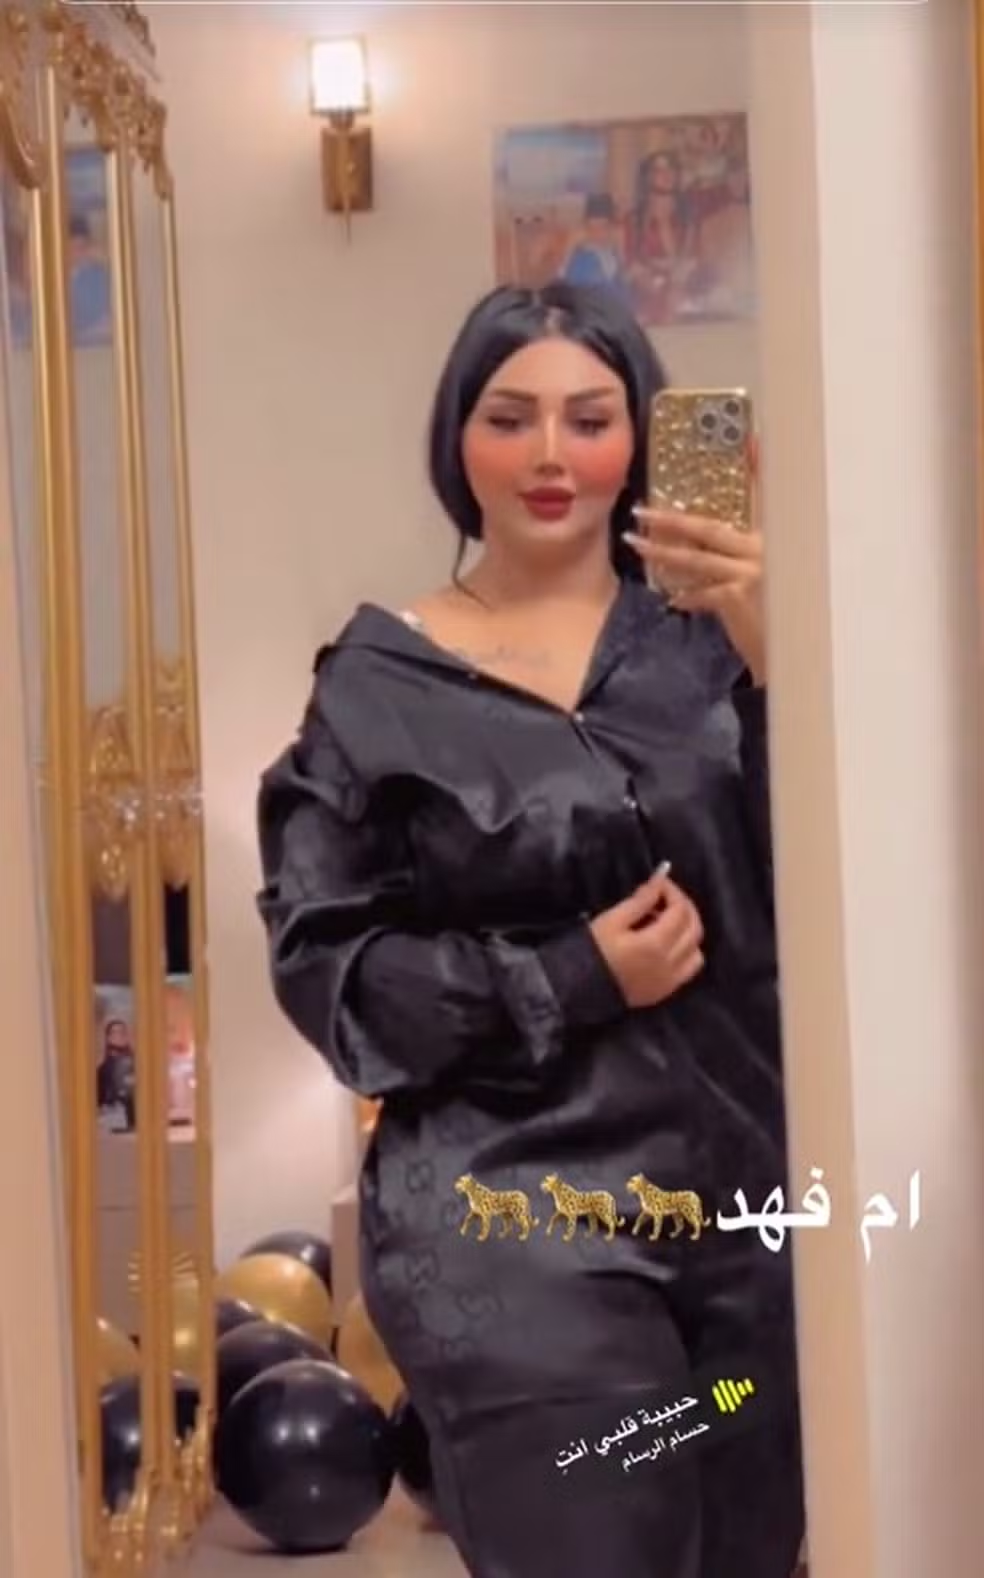 Ghufran Sawadi teria uma rivalidade com outro influenciadora, conhecida como "Barbie Iraquiana", que ameaçava expor relações de Om Fahad com altas autoridades do país Reprodução